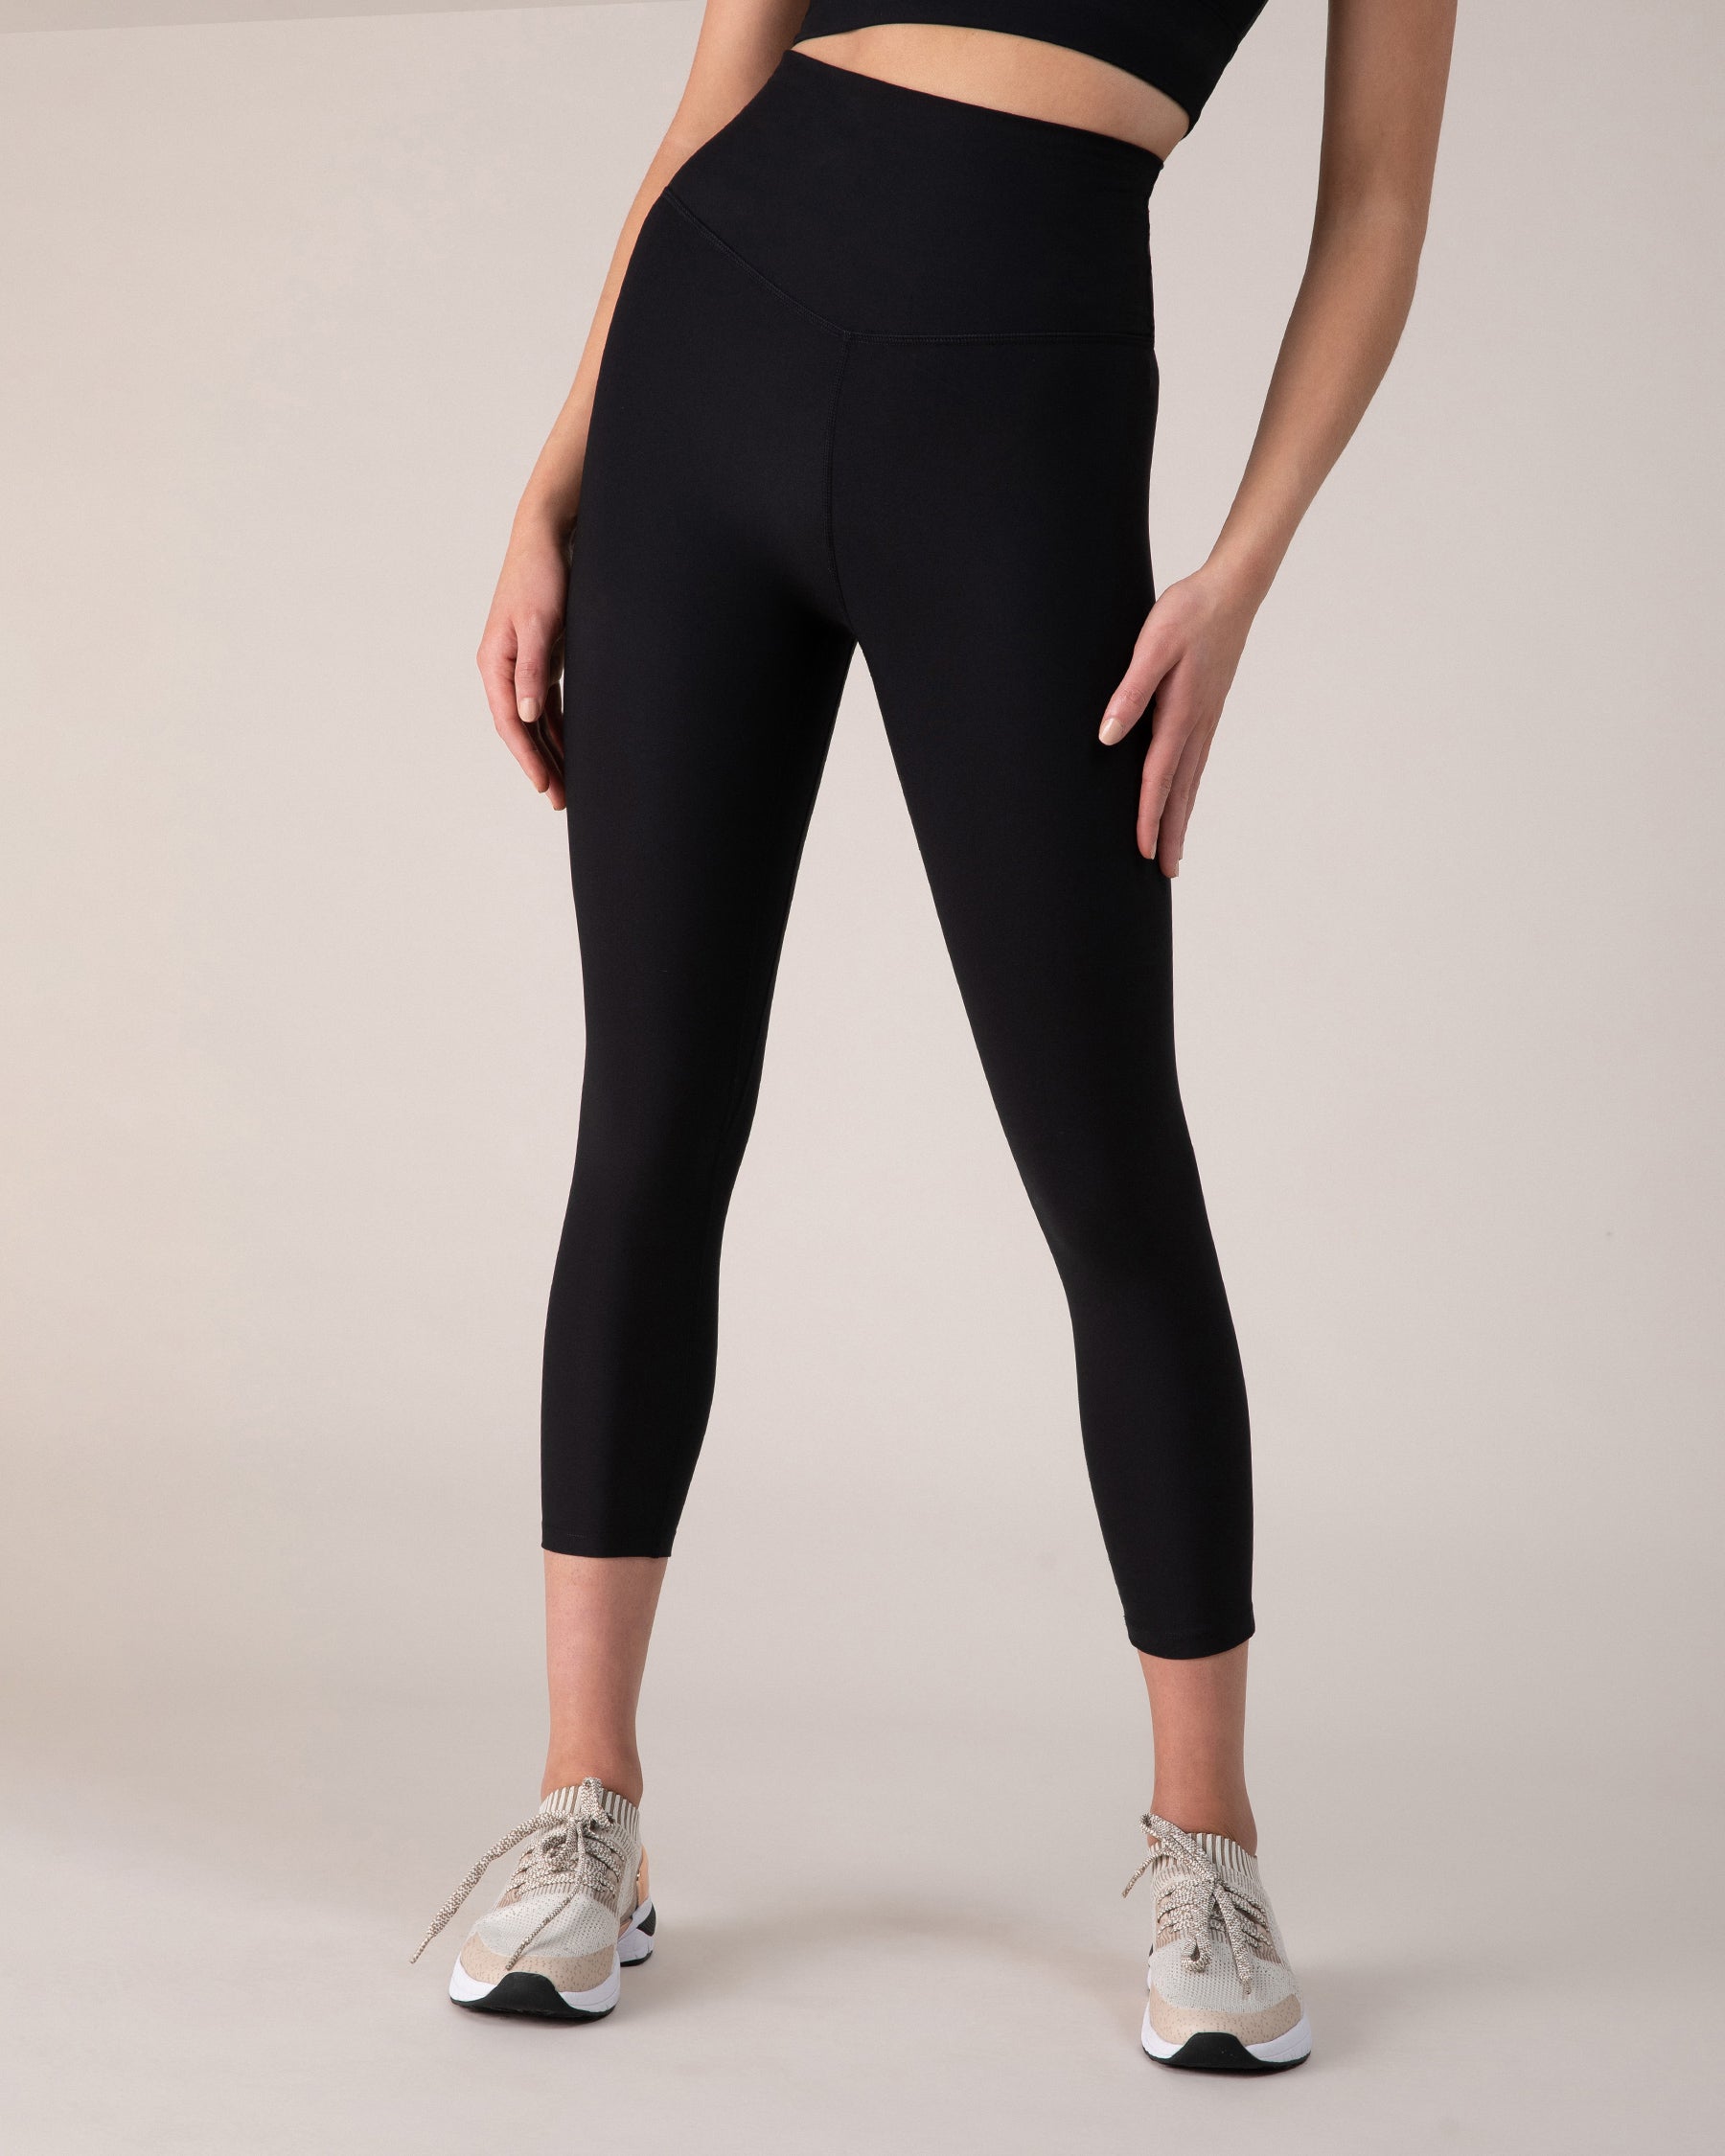 Jenny Warm Stretch Capri Leggings in Solid Black